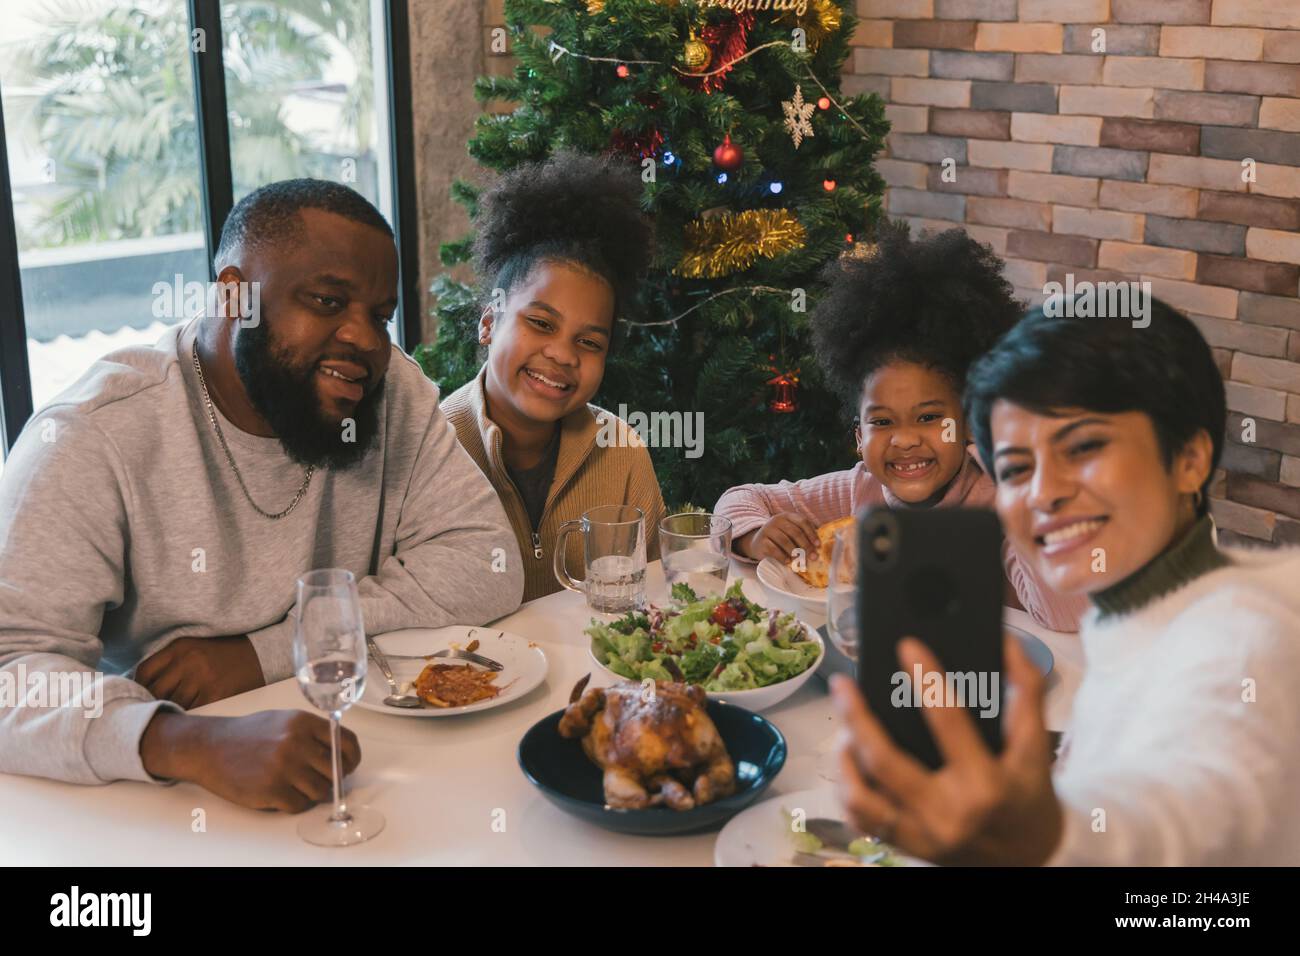 Fröhliche afroamerikanische Familie genießt weihnachten und das Mittagessen im neuen Jahr, während die Frau Selfie auf dem Smartphone mit Familienmitgliedern zu Hause gegen geschmückten Weihnachtsbaum nimmt Stockfoto